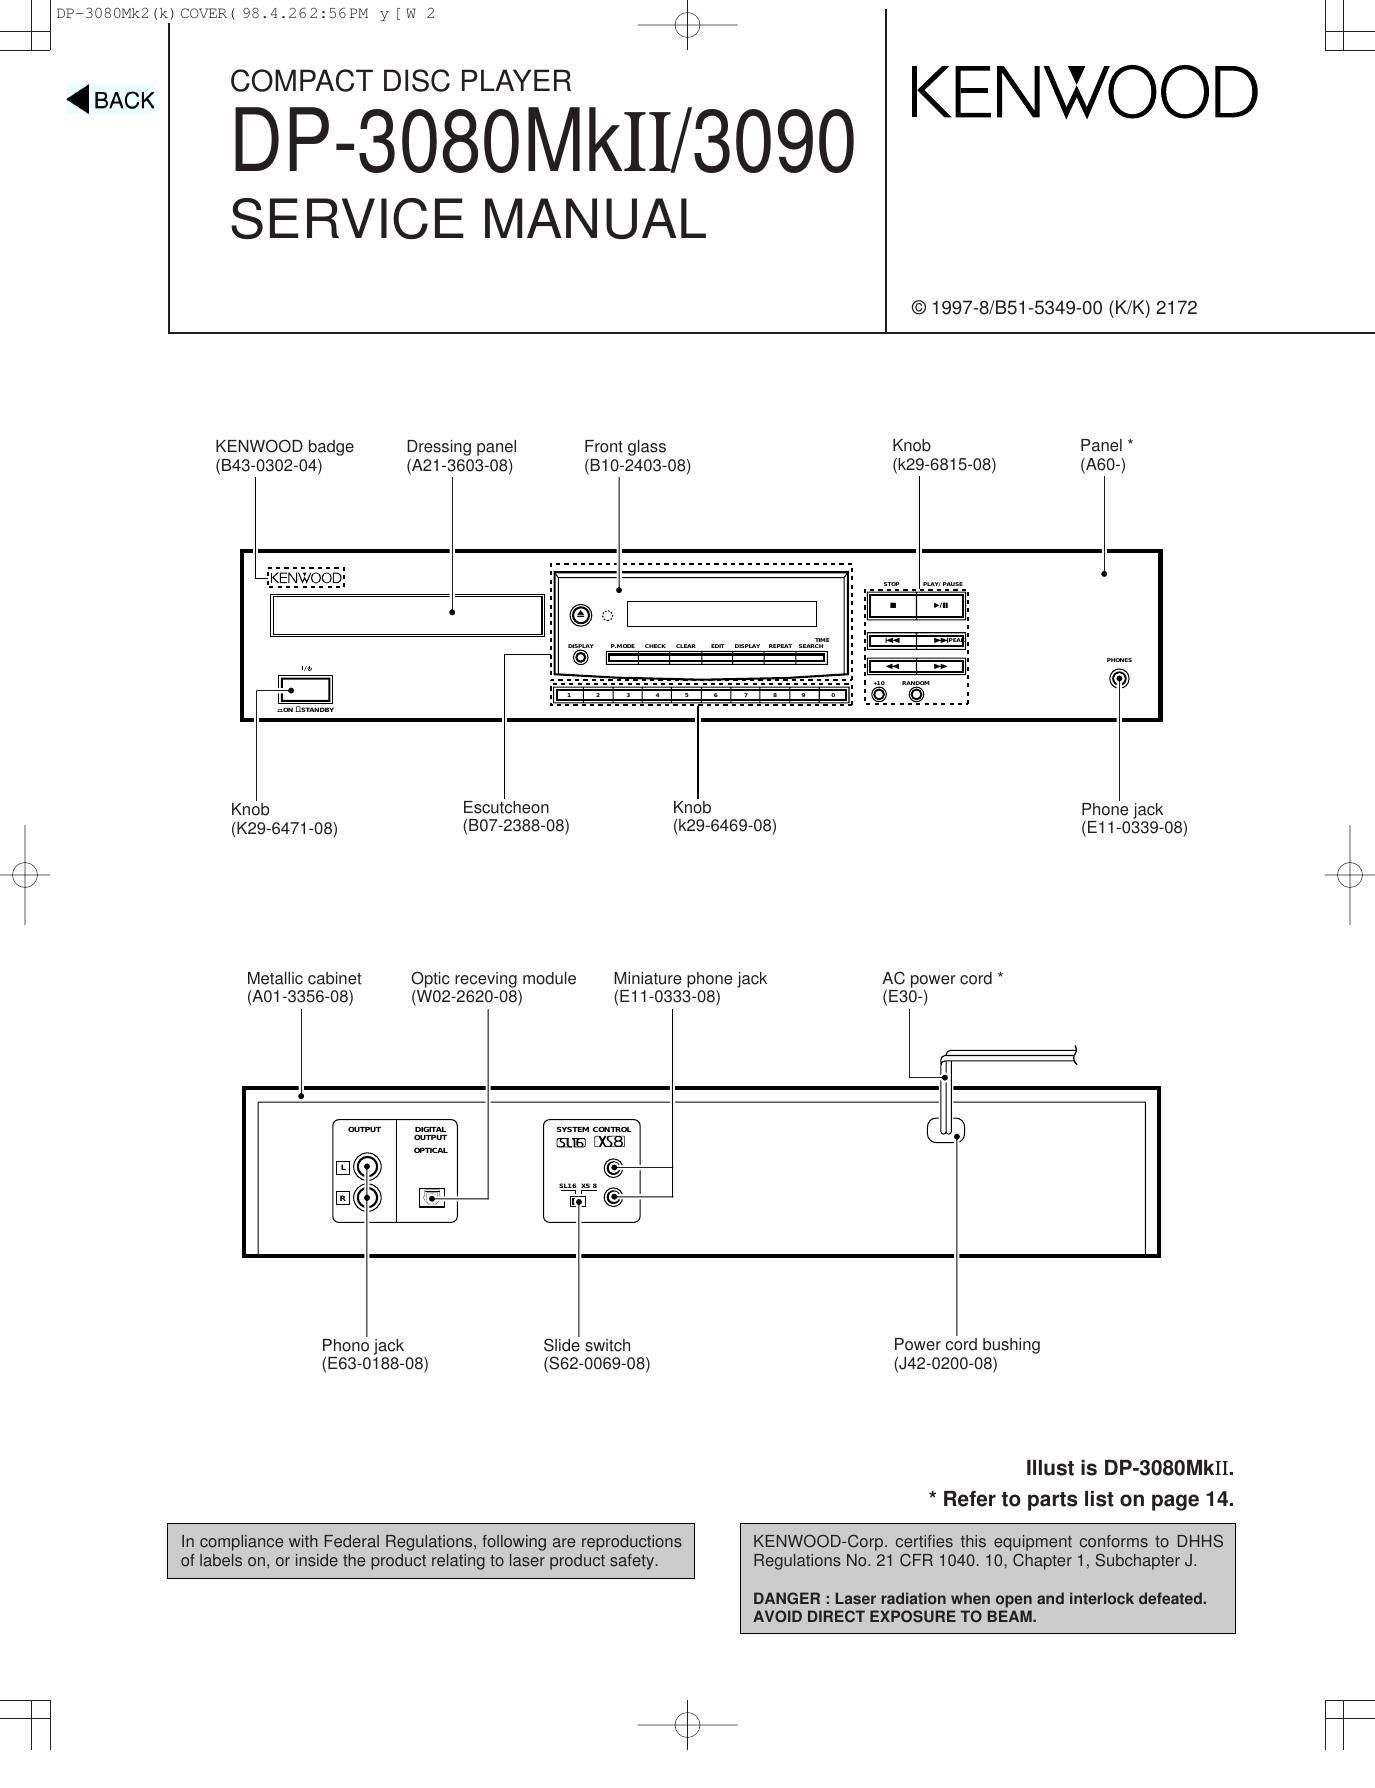 Kenwood DP 3090 Service Manual